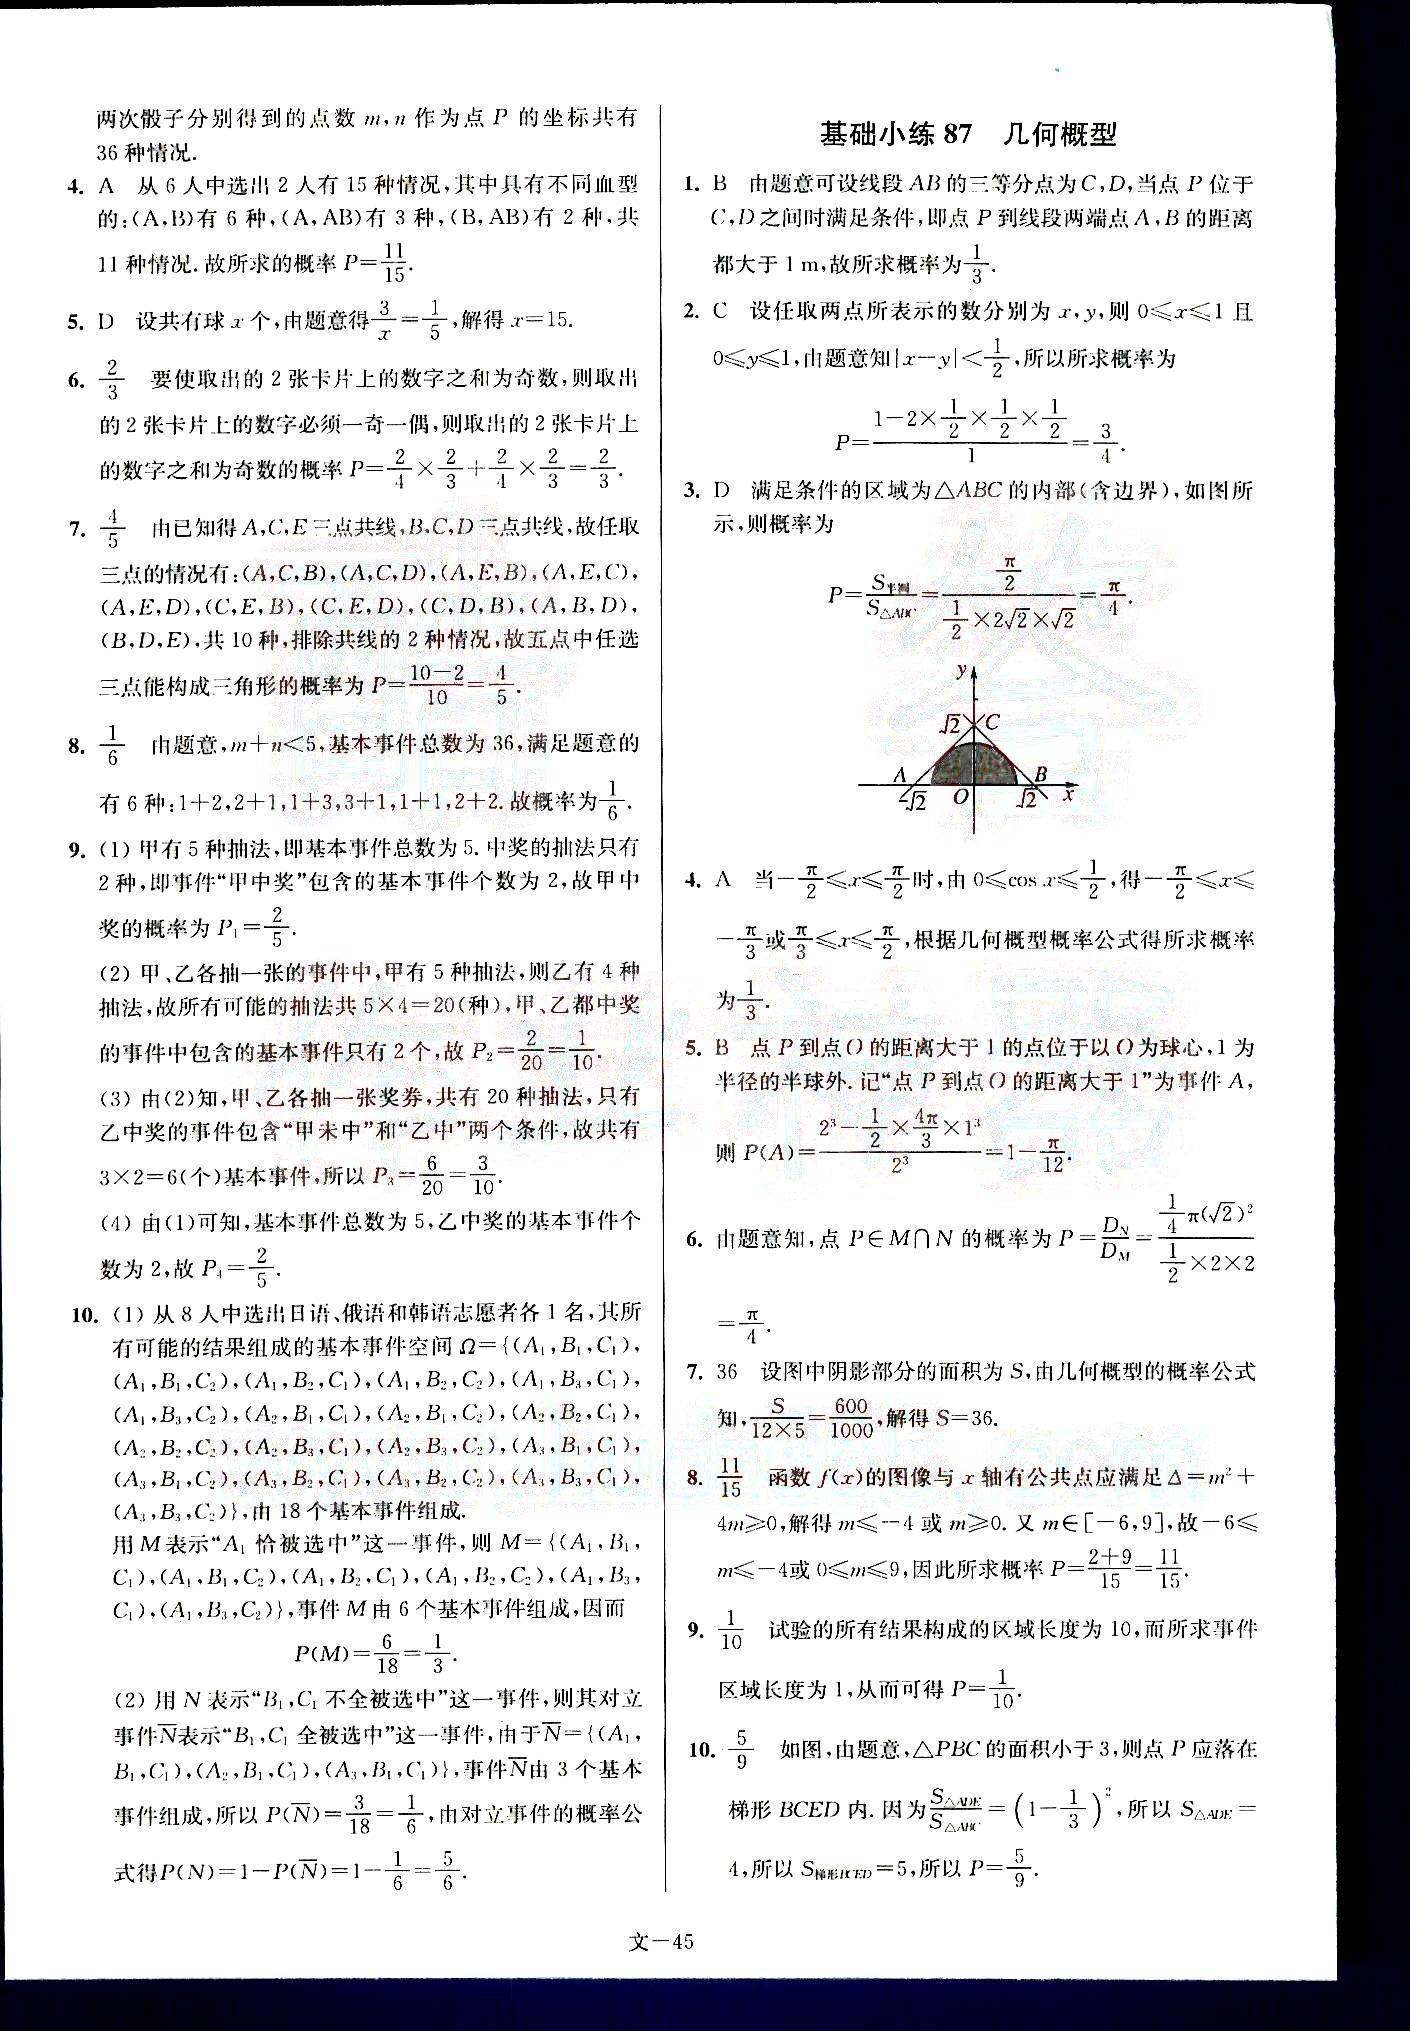 小题狂做-高考数学-文科-最基础篇南京大学出版社 第9部分 [5]